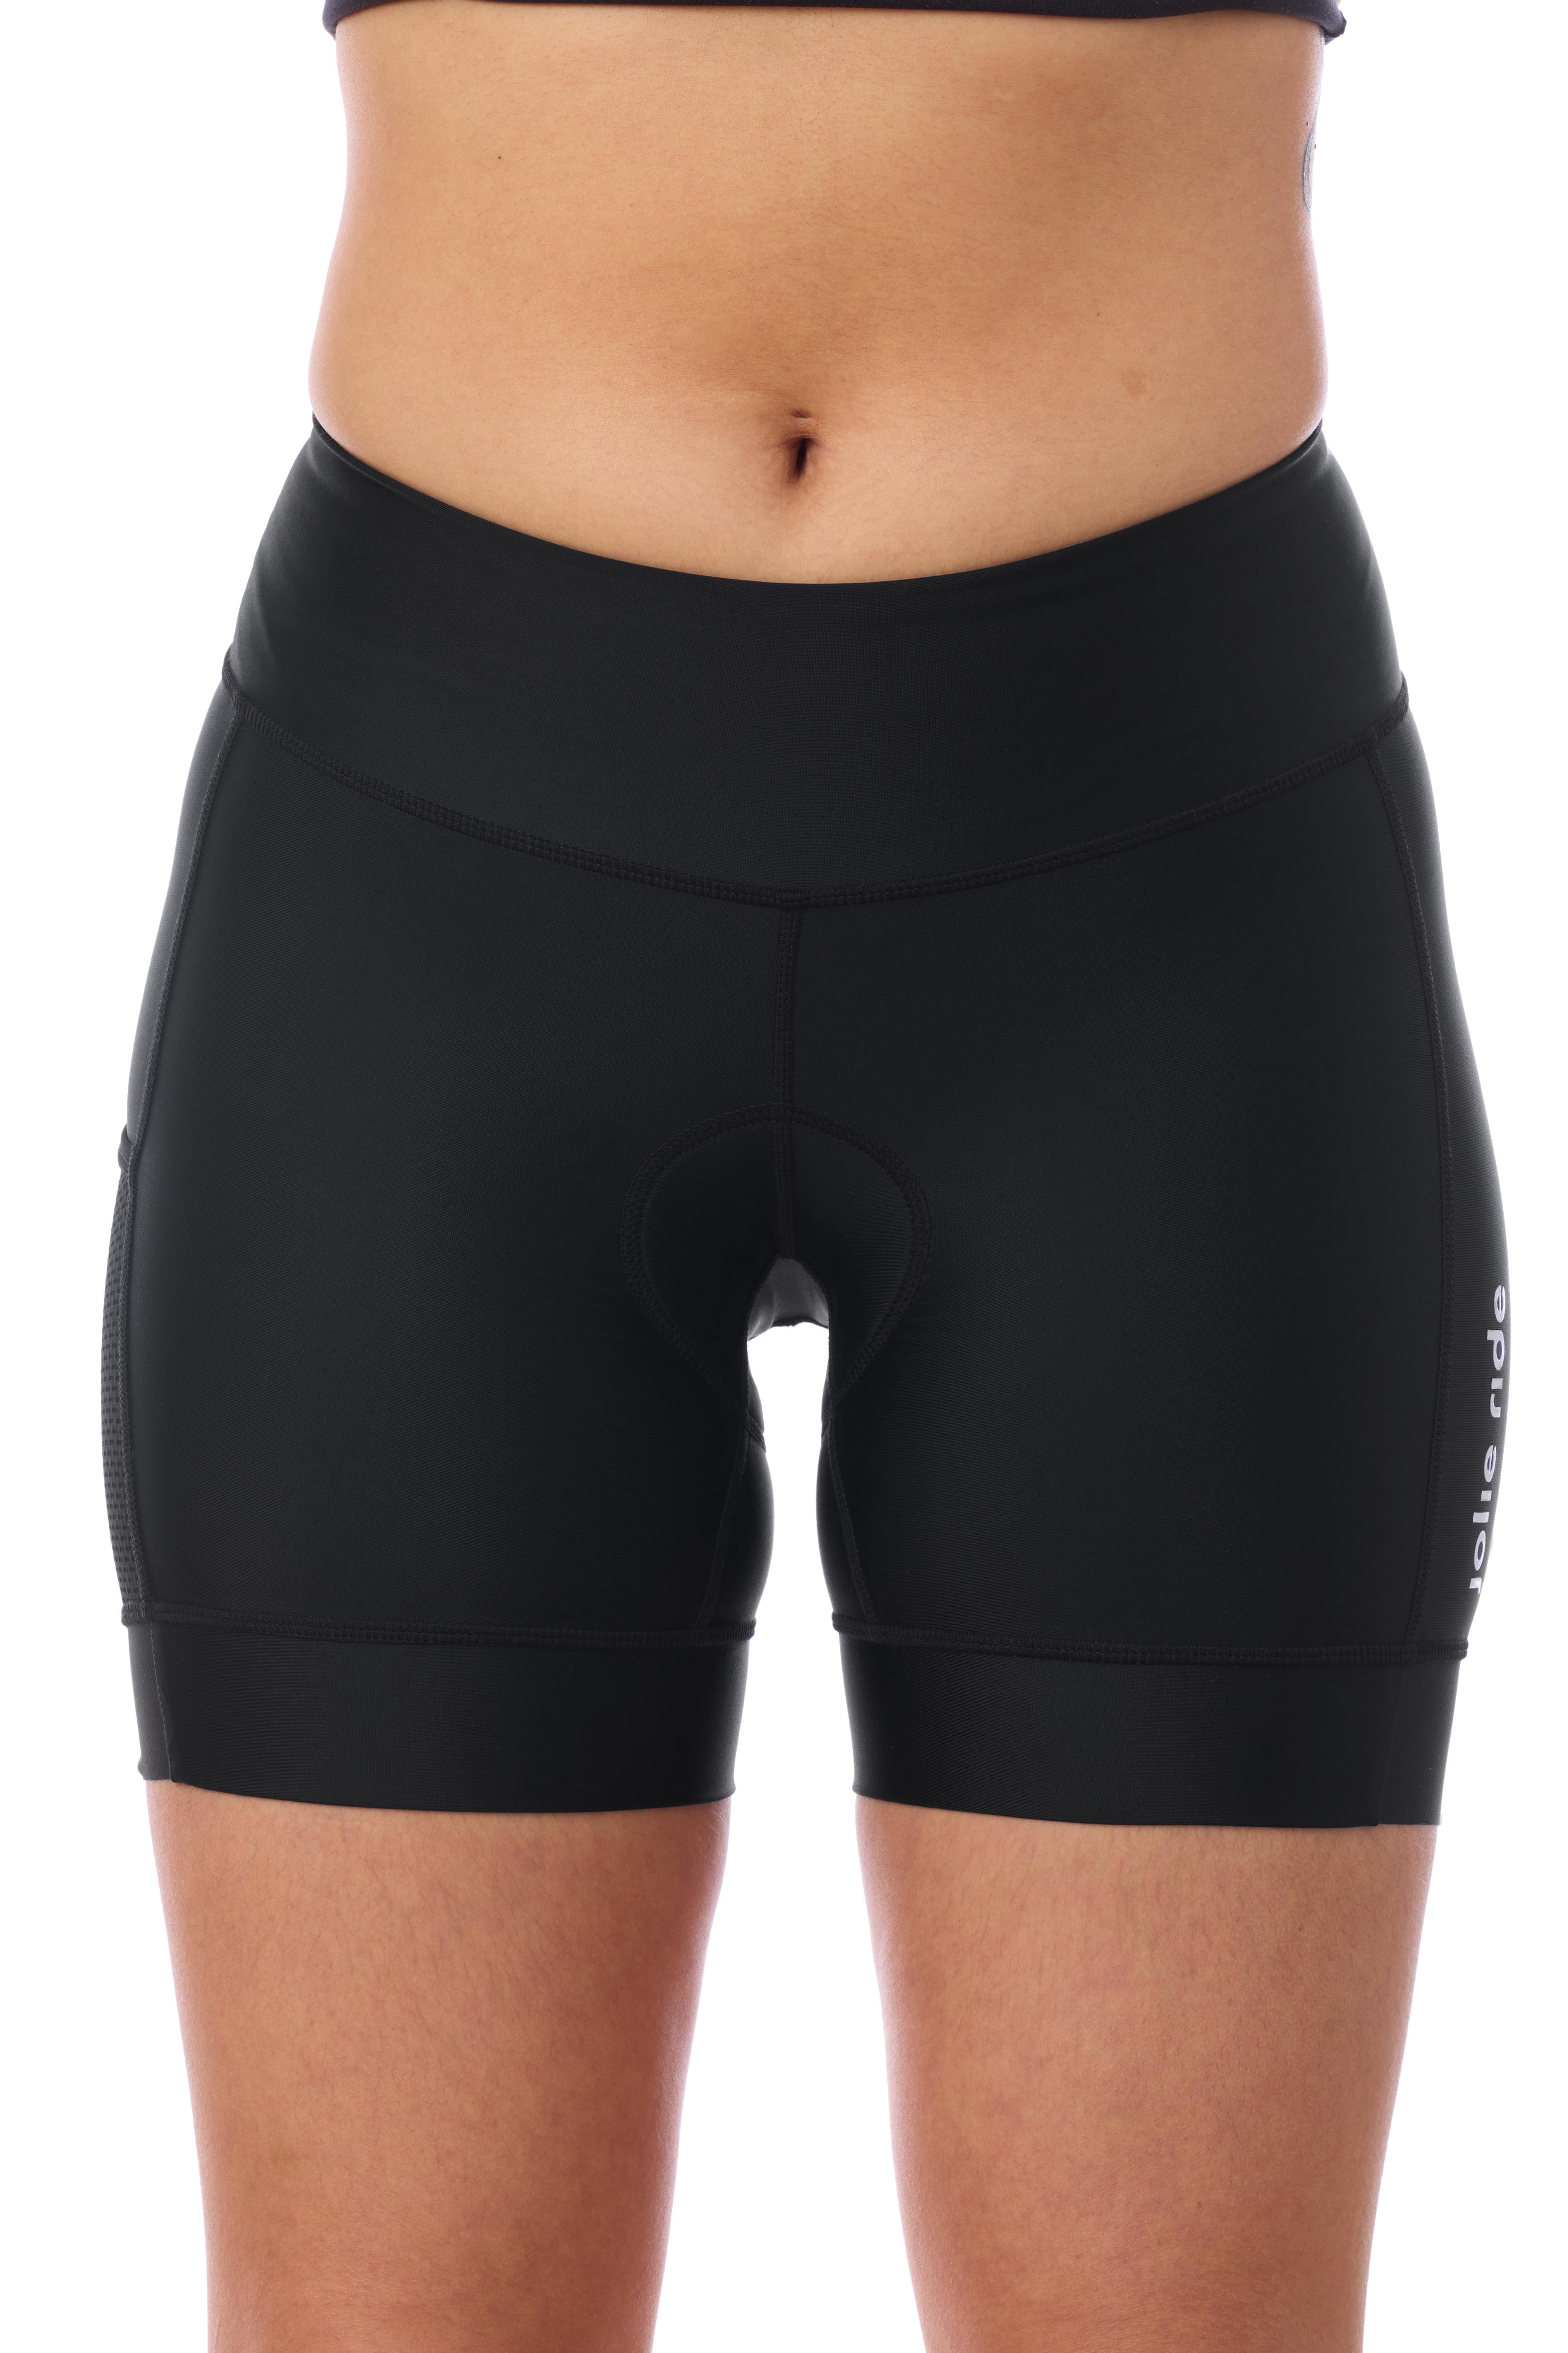 daisy jersey + 15cm black shorts bundle